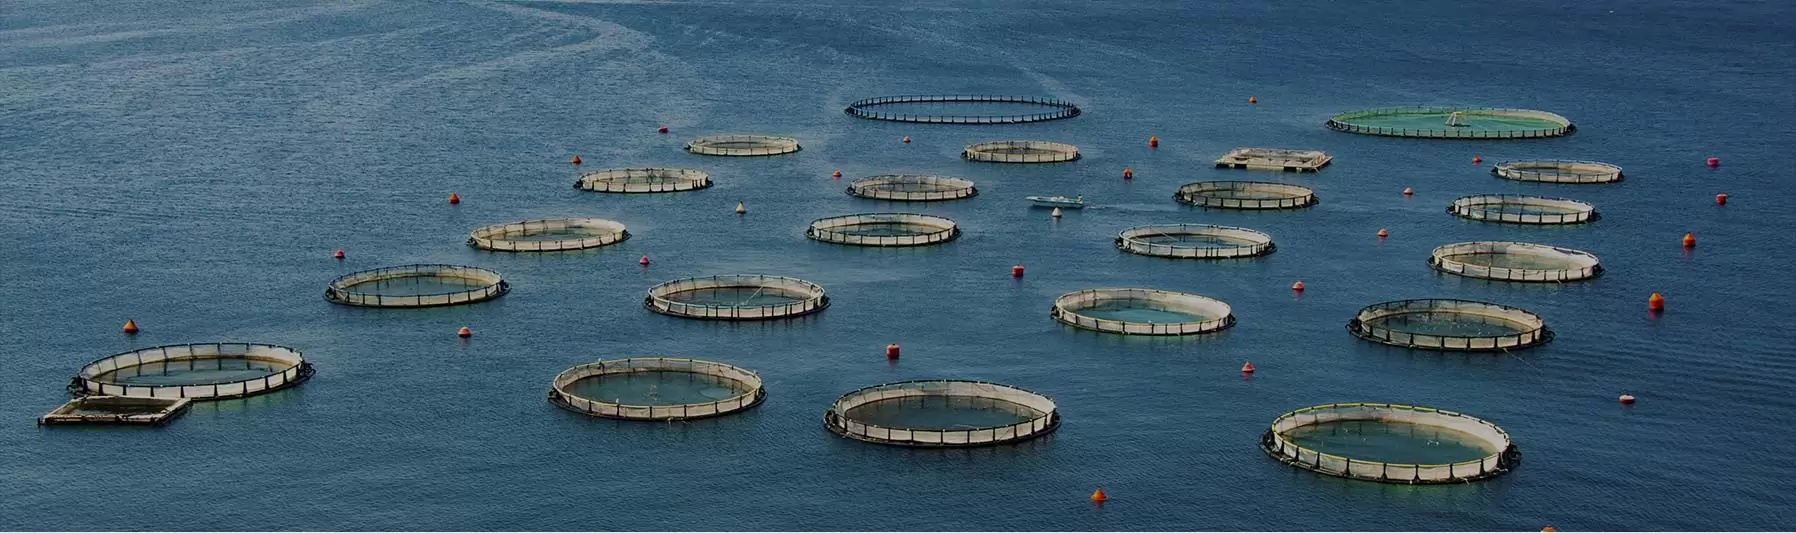 aquaculture farm